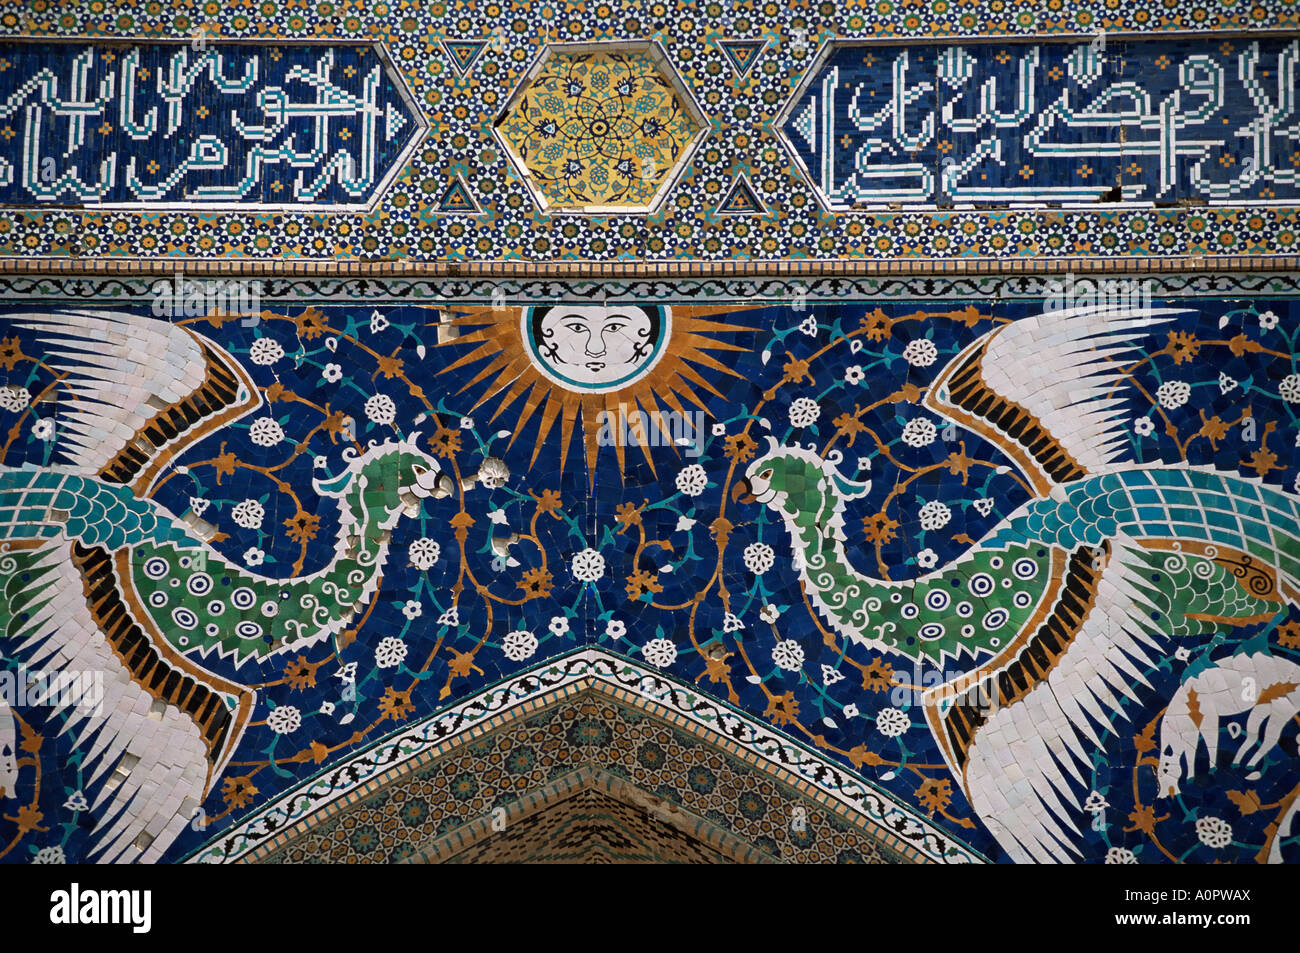 Nahaufnahme von Mosaikarbeit Nadir Divanbegi Madrasa Lyab ich Khauz Buchara Usbekistan Zentralasien Asien Stockfoto